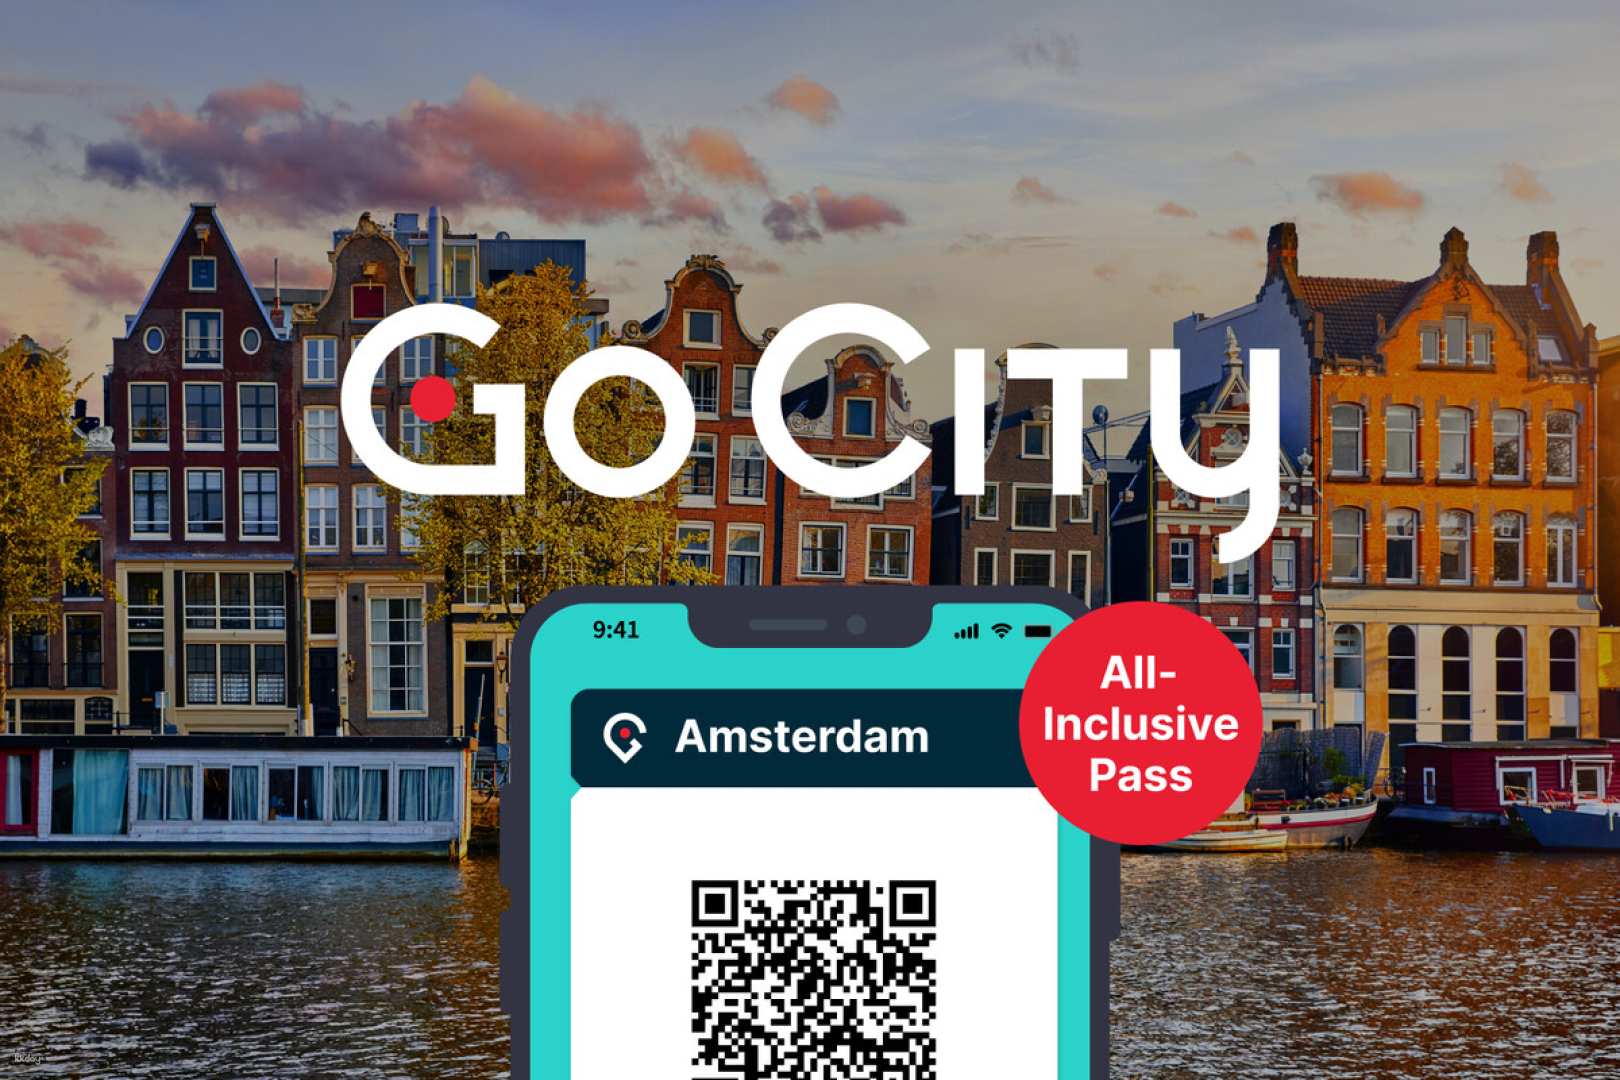 荷蘭-阿姆斯特丹全天暢遊通行證 Amsterdam All-Inclusive Pass 自選天數